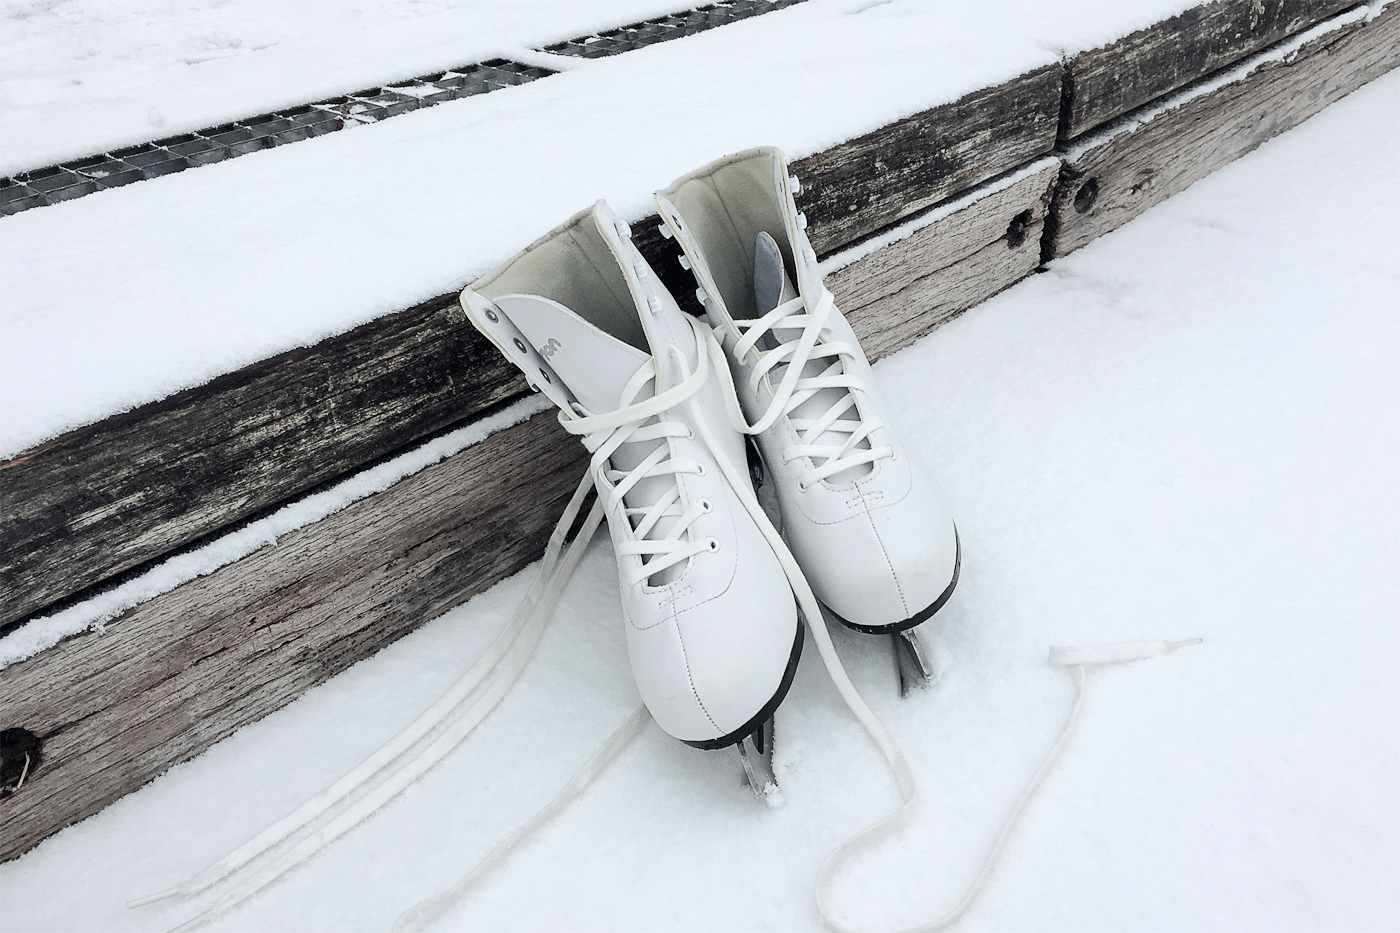 eislaufen-schlittschuhe-wintersport-lifestyleblog